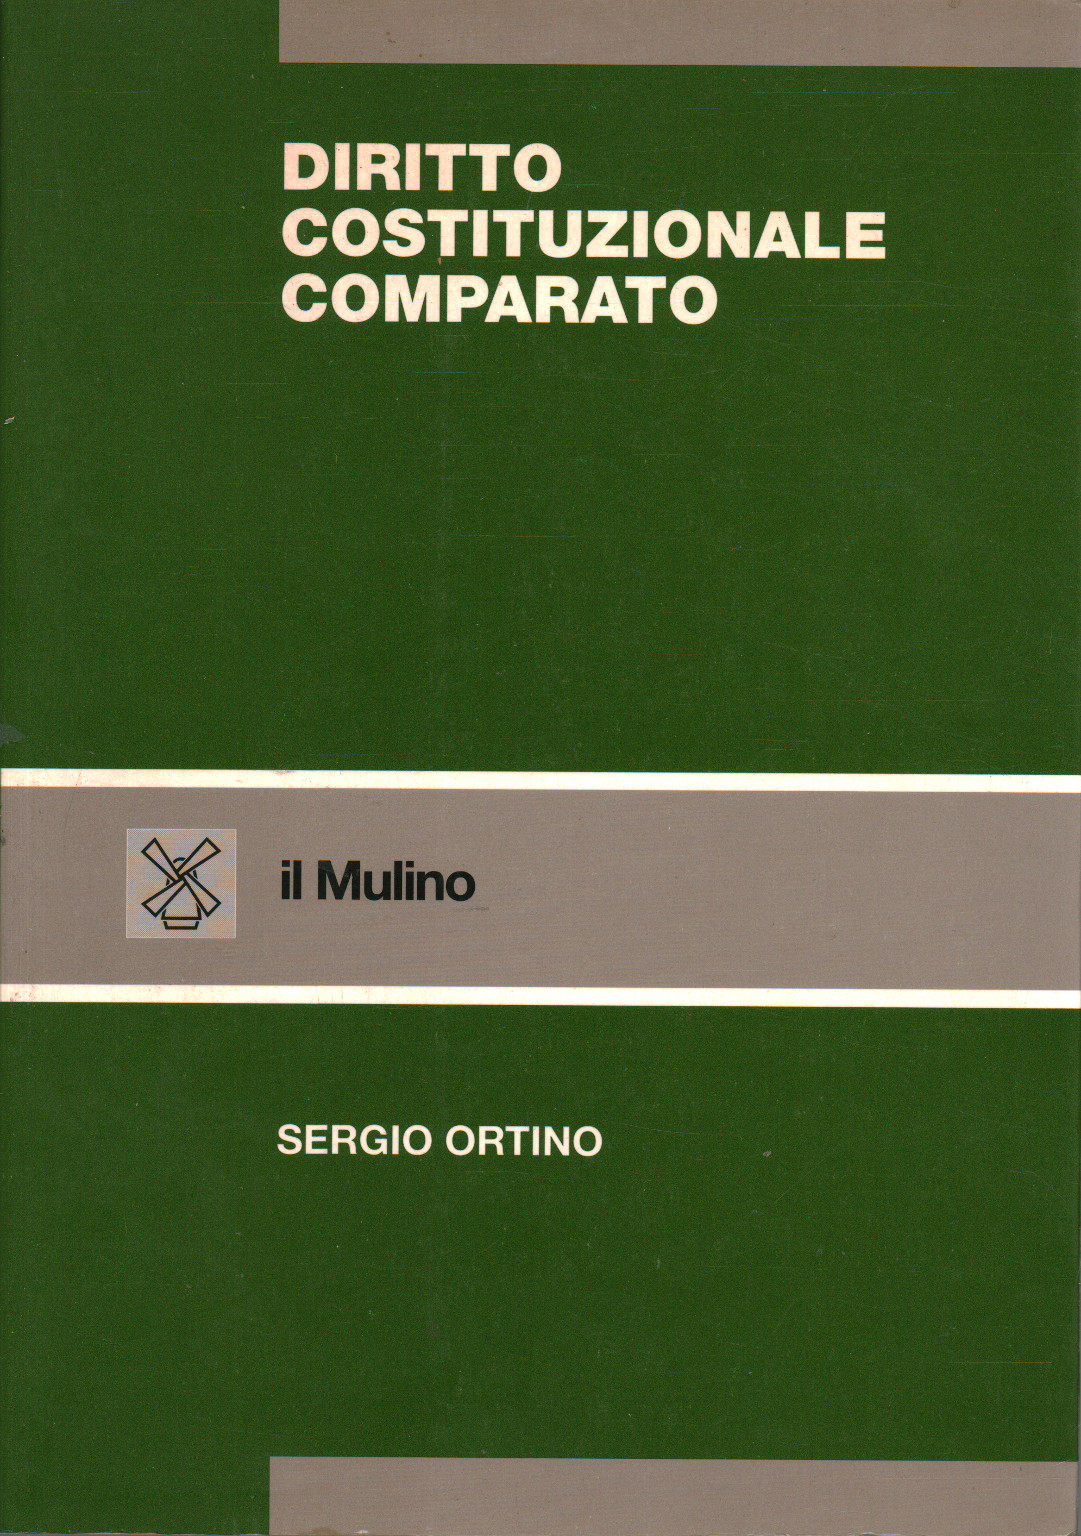 Diritto costituzionale comparato, Sergio Ortino